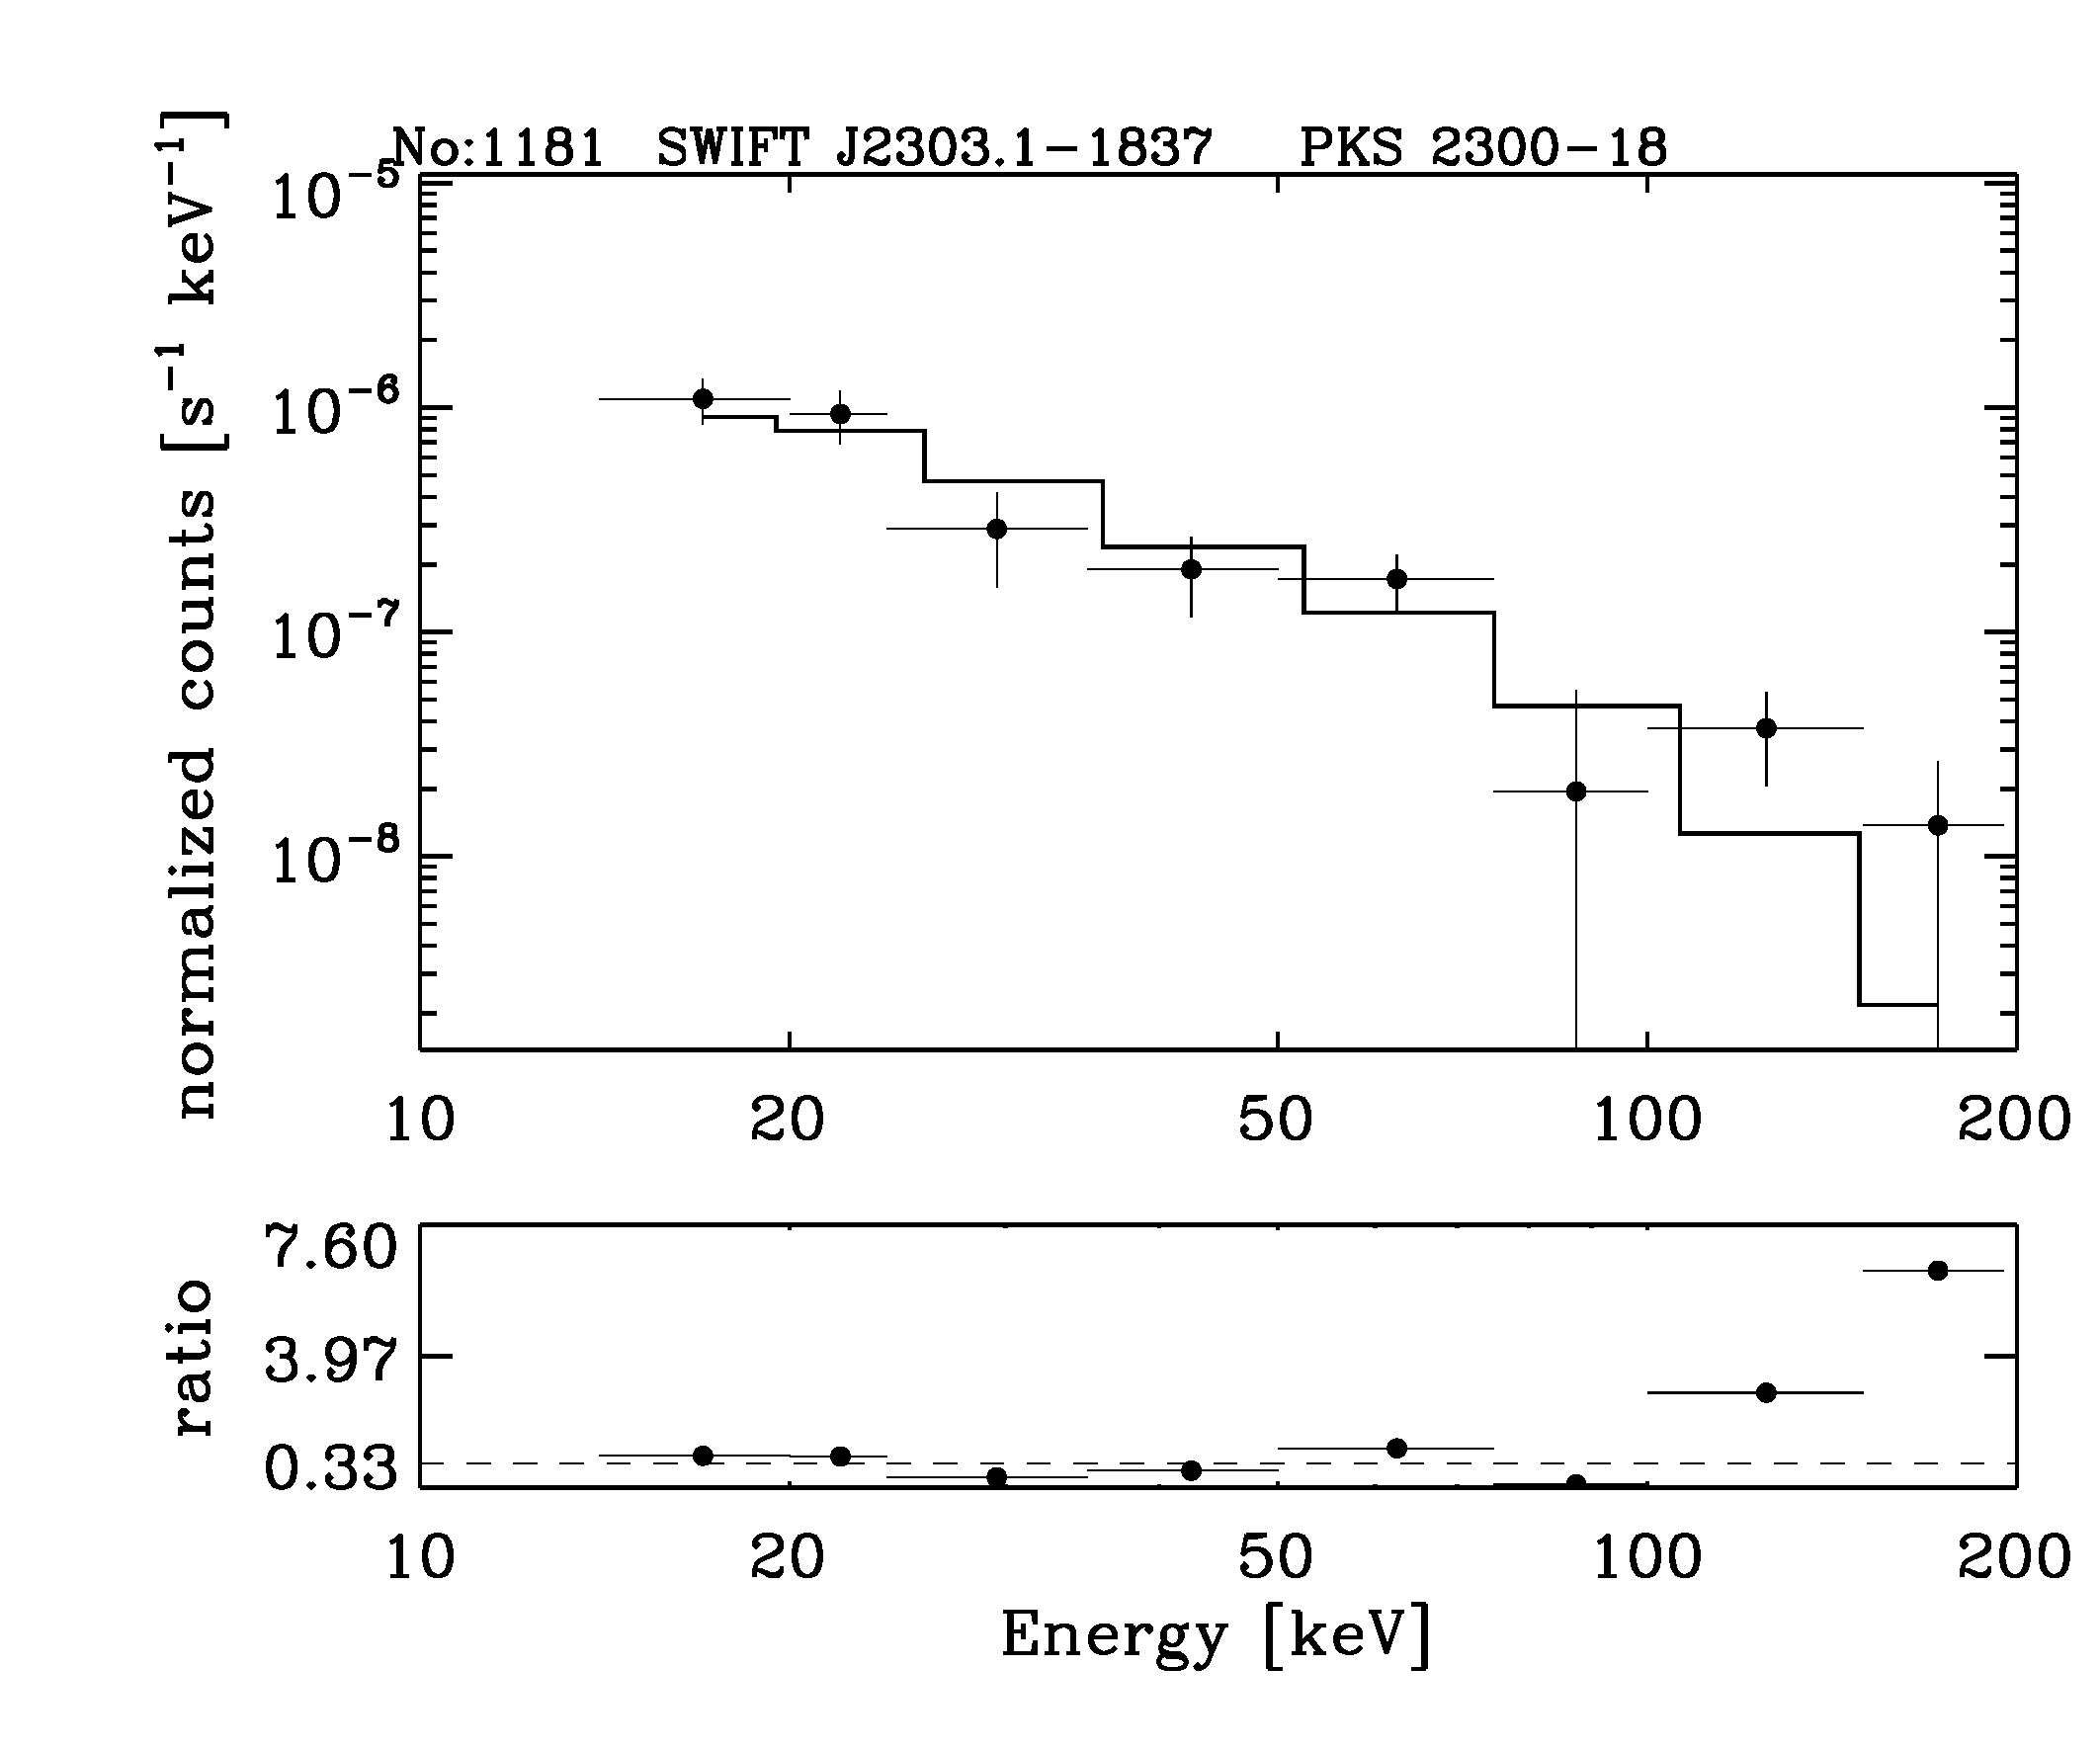 BAT Spectrum for SWIFT J2303.1-1837